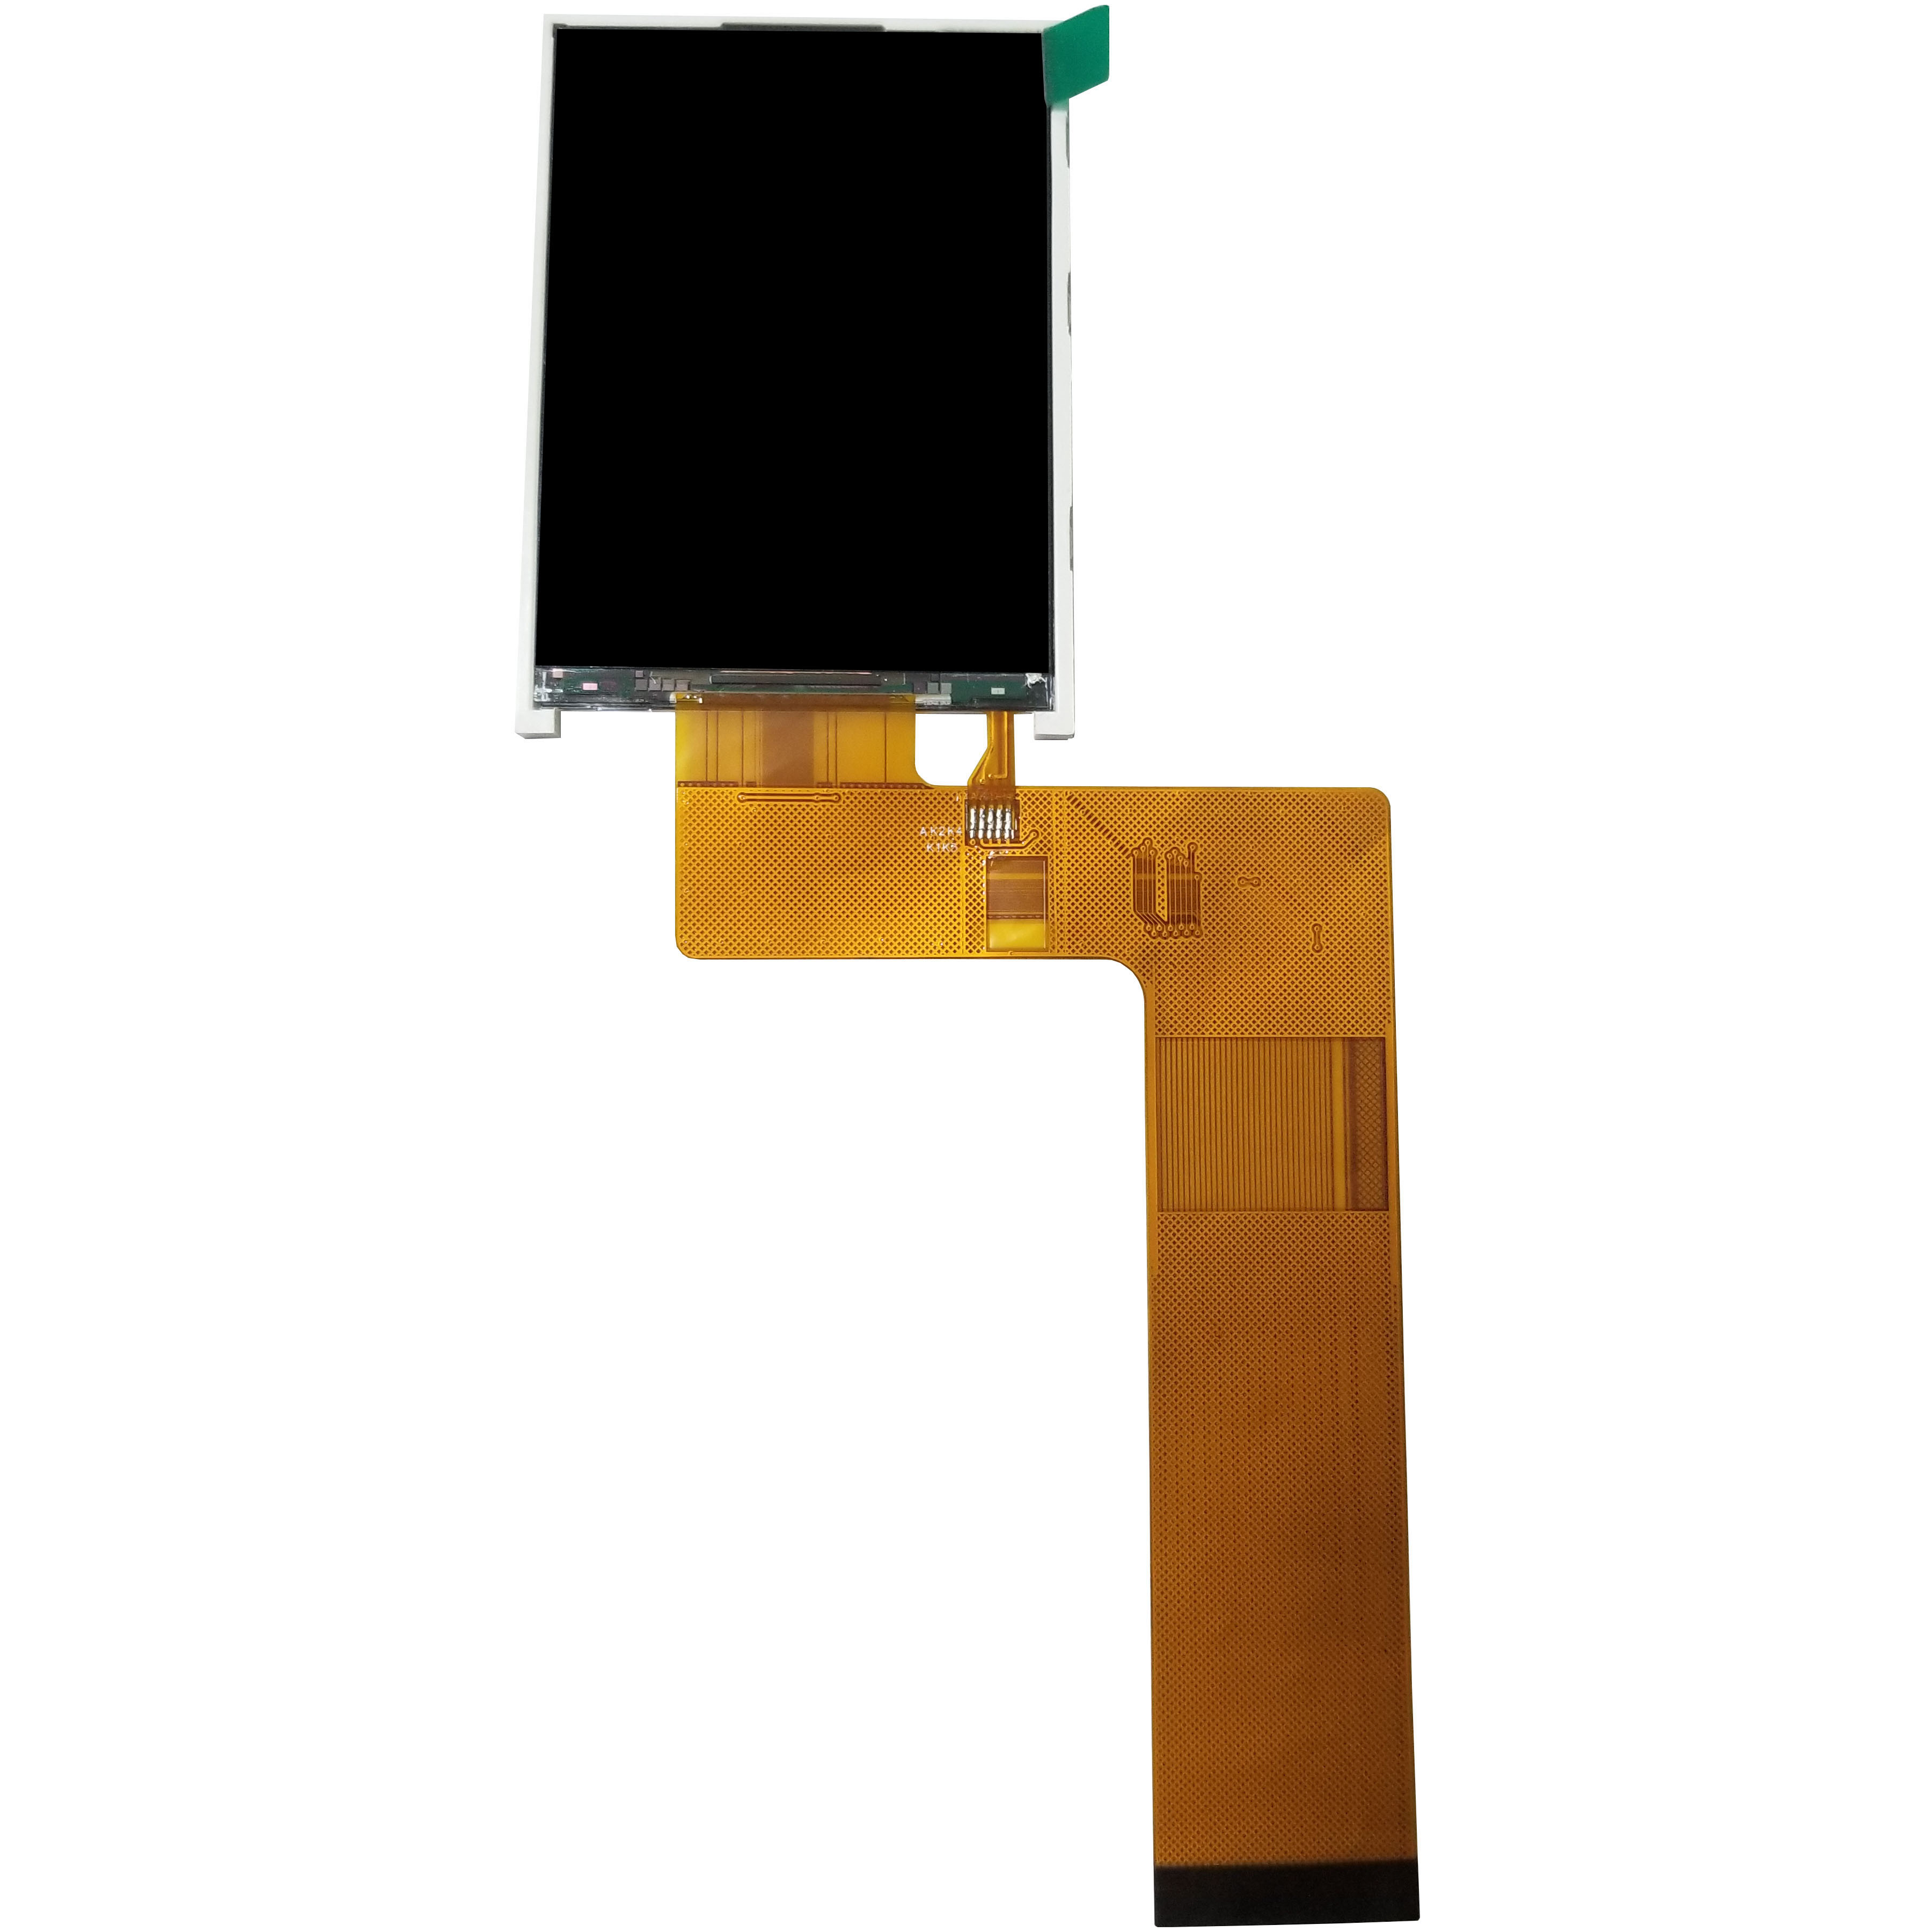 ST7789V 2,8 Zoll TFT LCD-Anzeigen